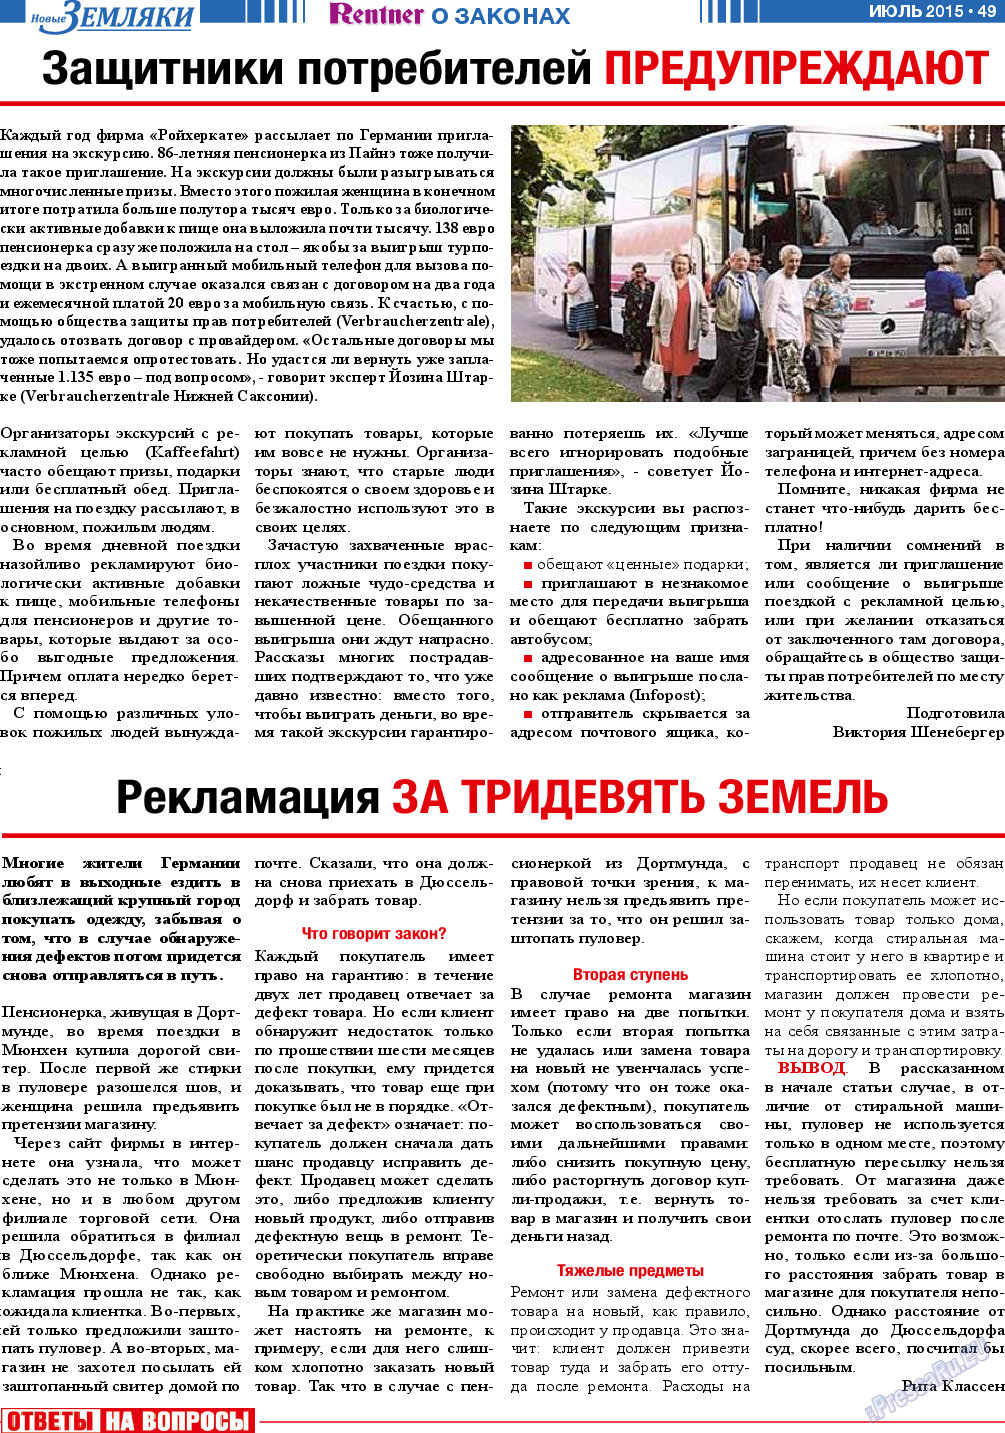 Новые Земляки (газета). 2015 год, номер 7, стр. 49